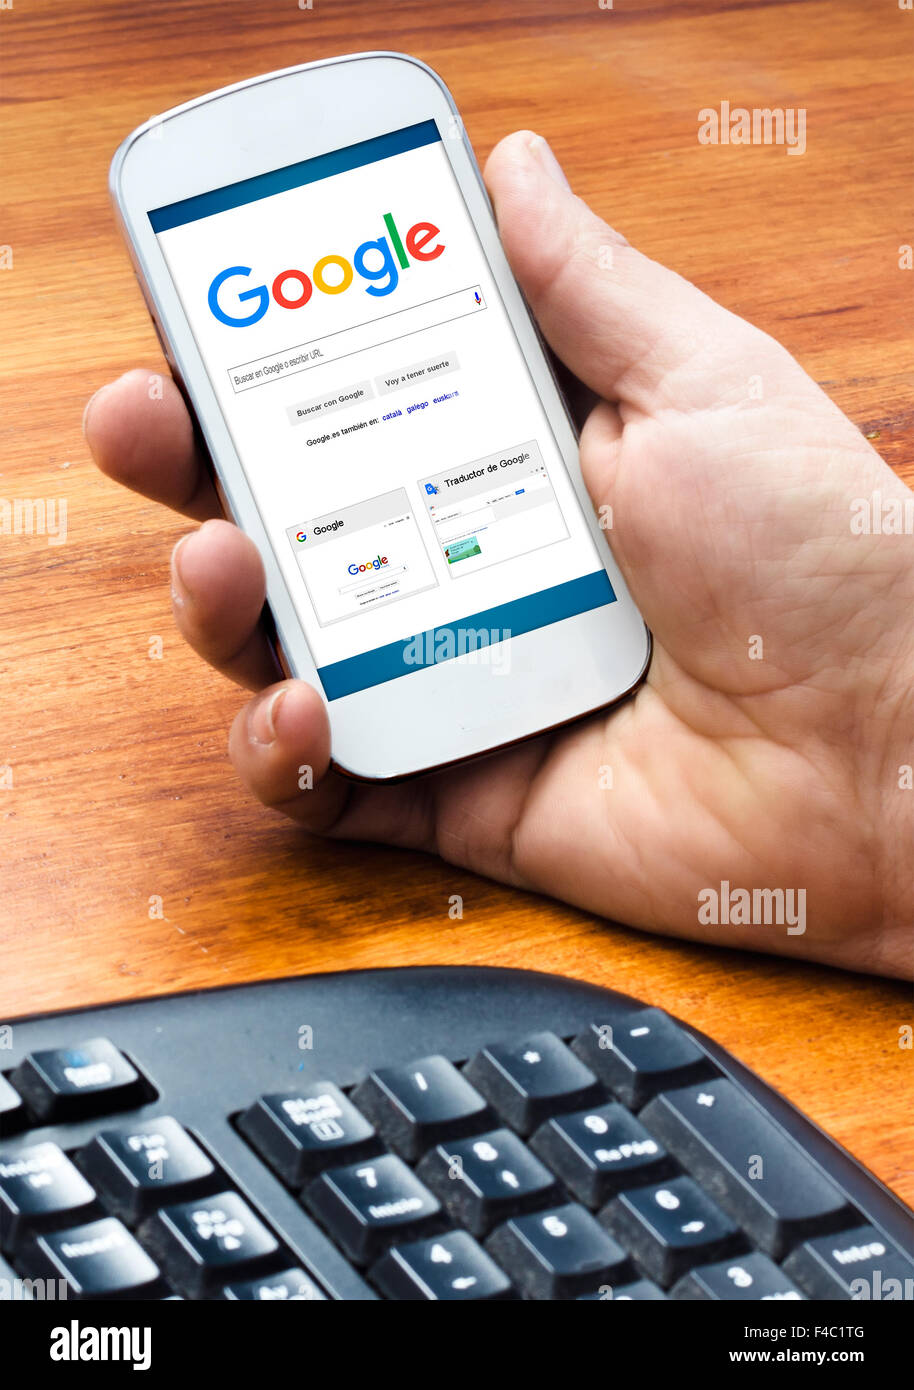 Barcelone, Espagne- le 4 septembre 2015 : Male hand holding sur smartphone Avec Google Web Search accueil sur l'écran (Nouveau Google l Banque D'Images